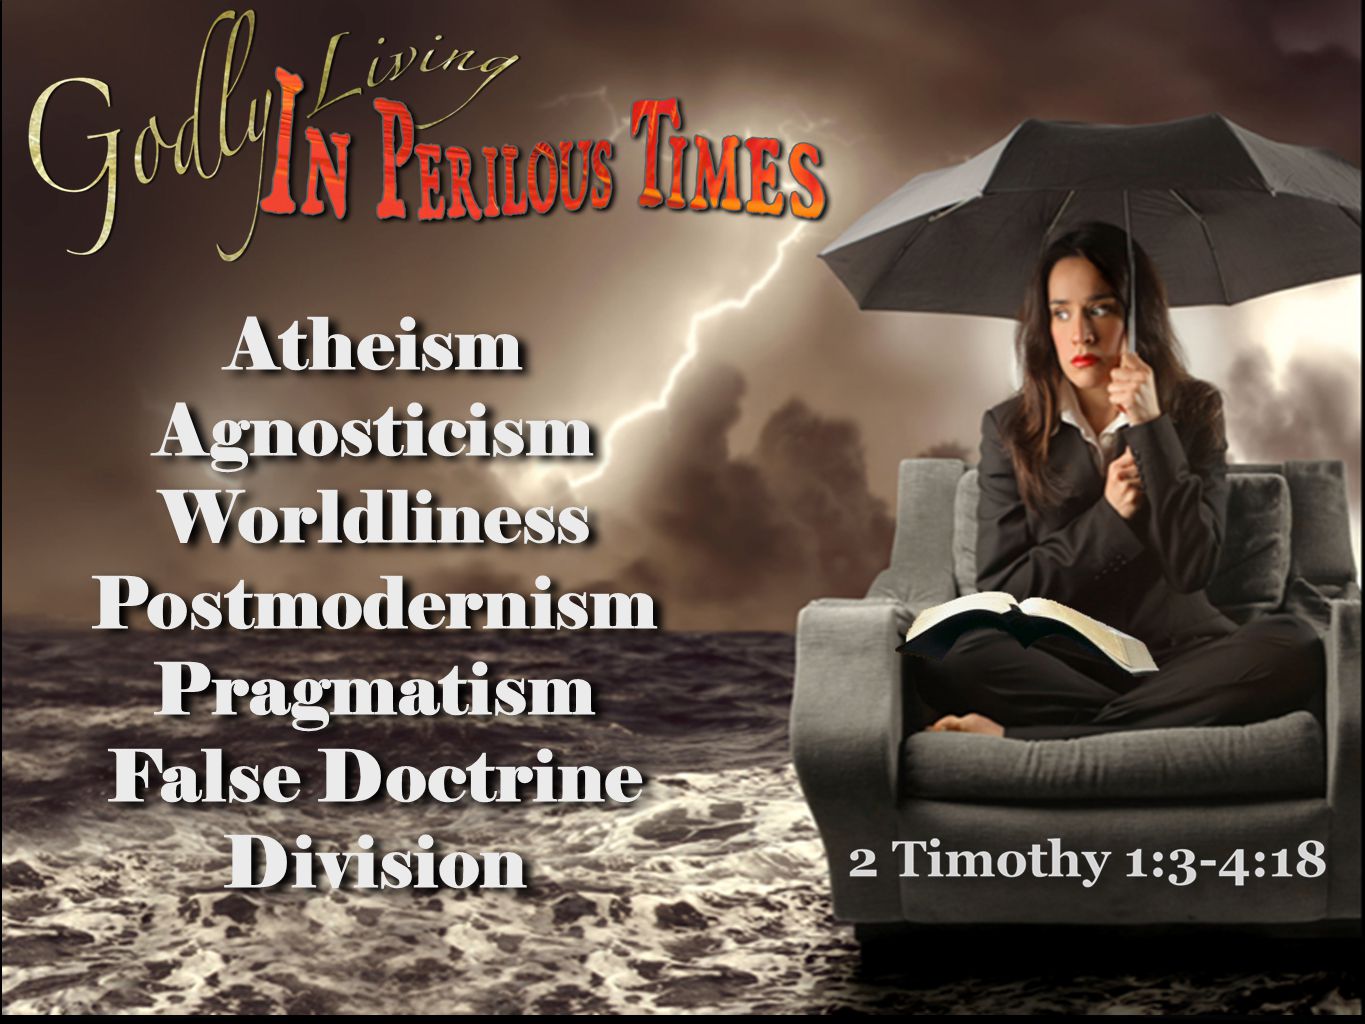 Atheism Agnosticism Worldliness Postmodernism Pragmatism False Doctrine Division Atheism Agnosticism Worldliness Postmodernism Pragmatism False Doctrine Division